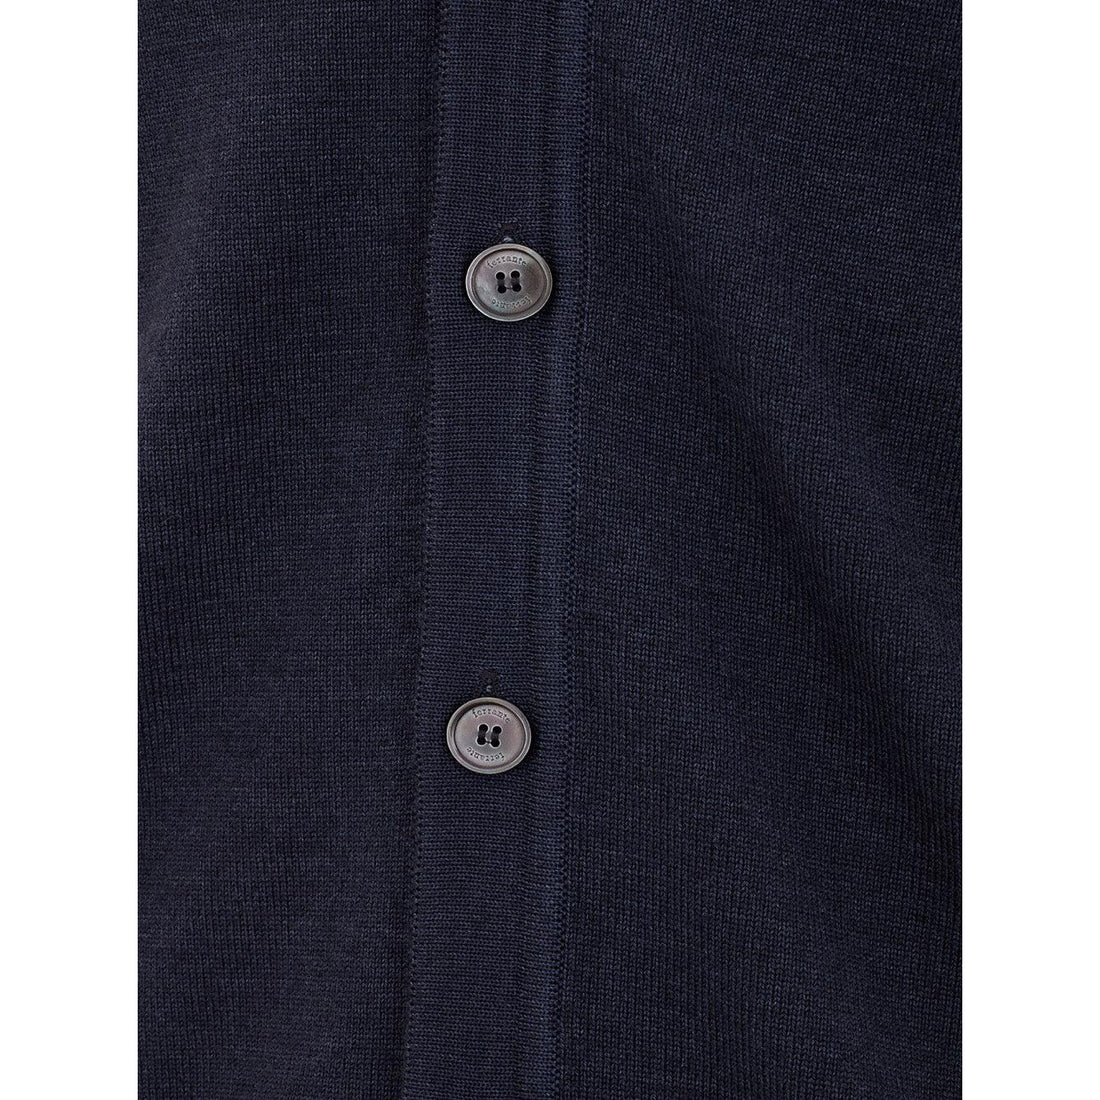 FERRANTE Elegant Wool Gilet Sleeveless Classic Vest